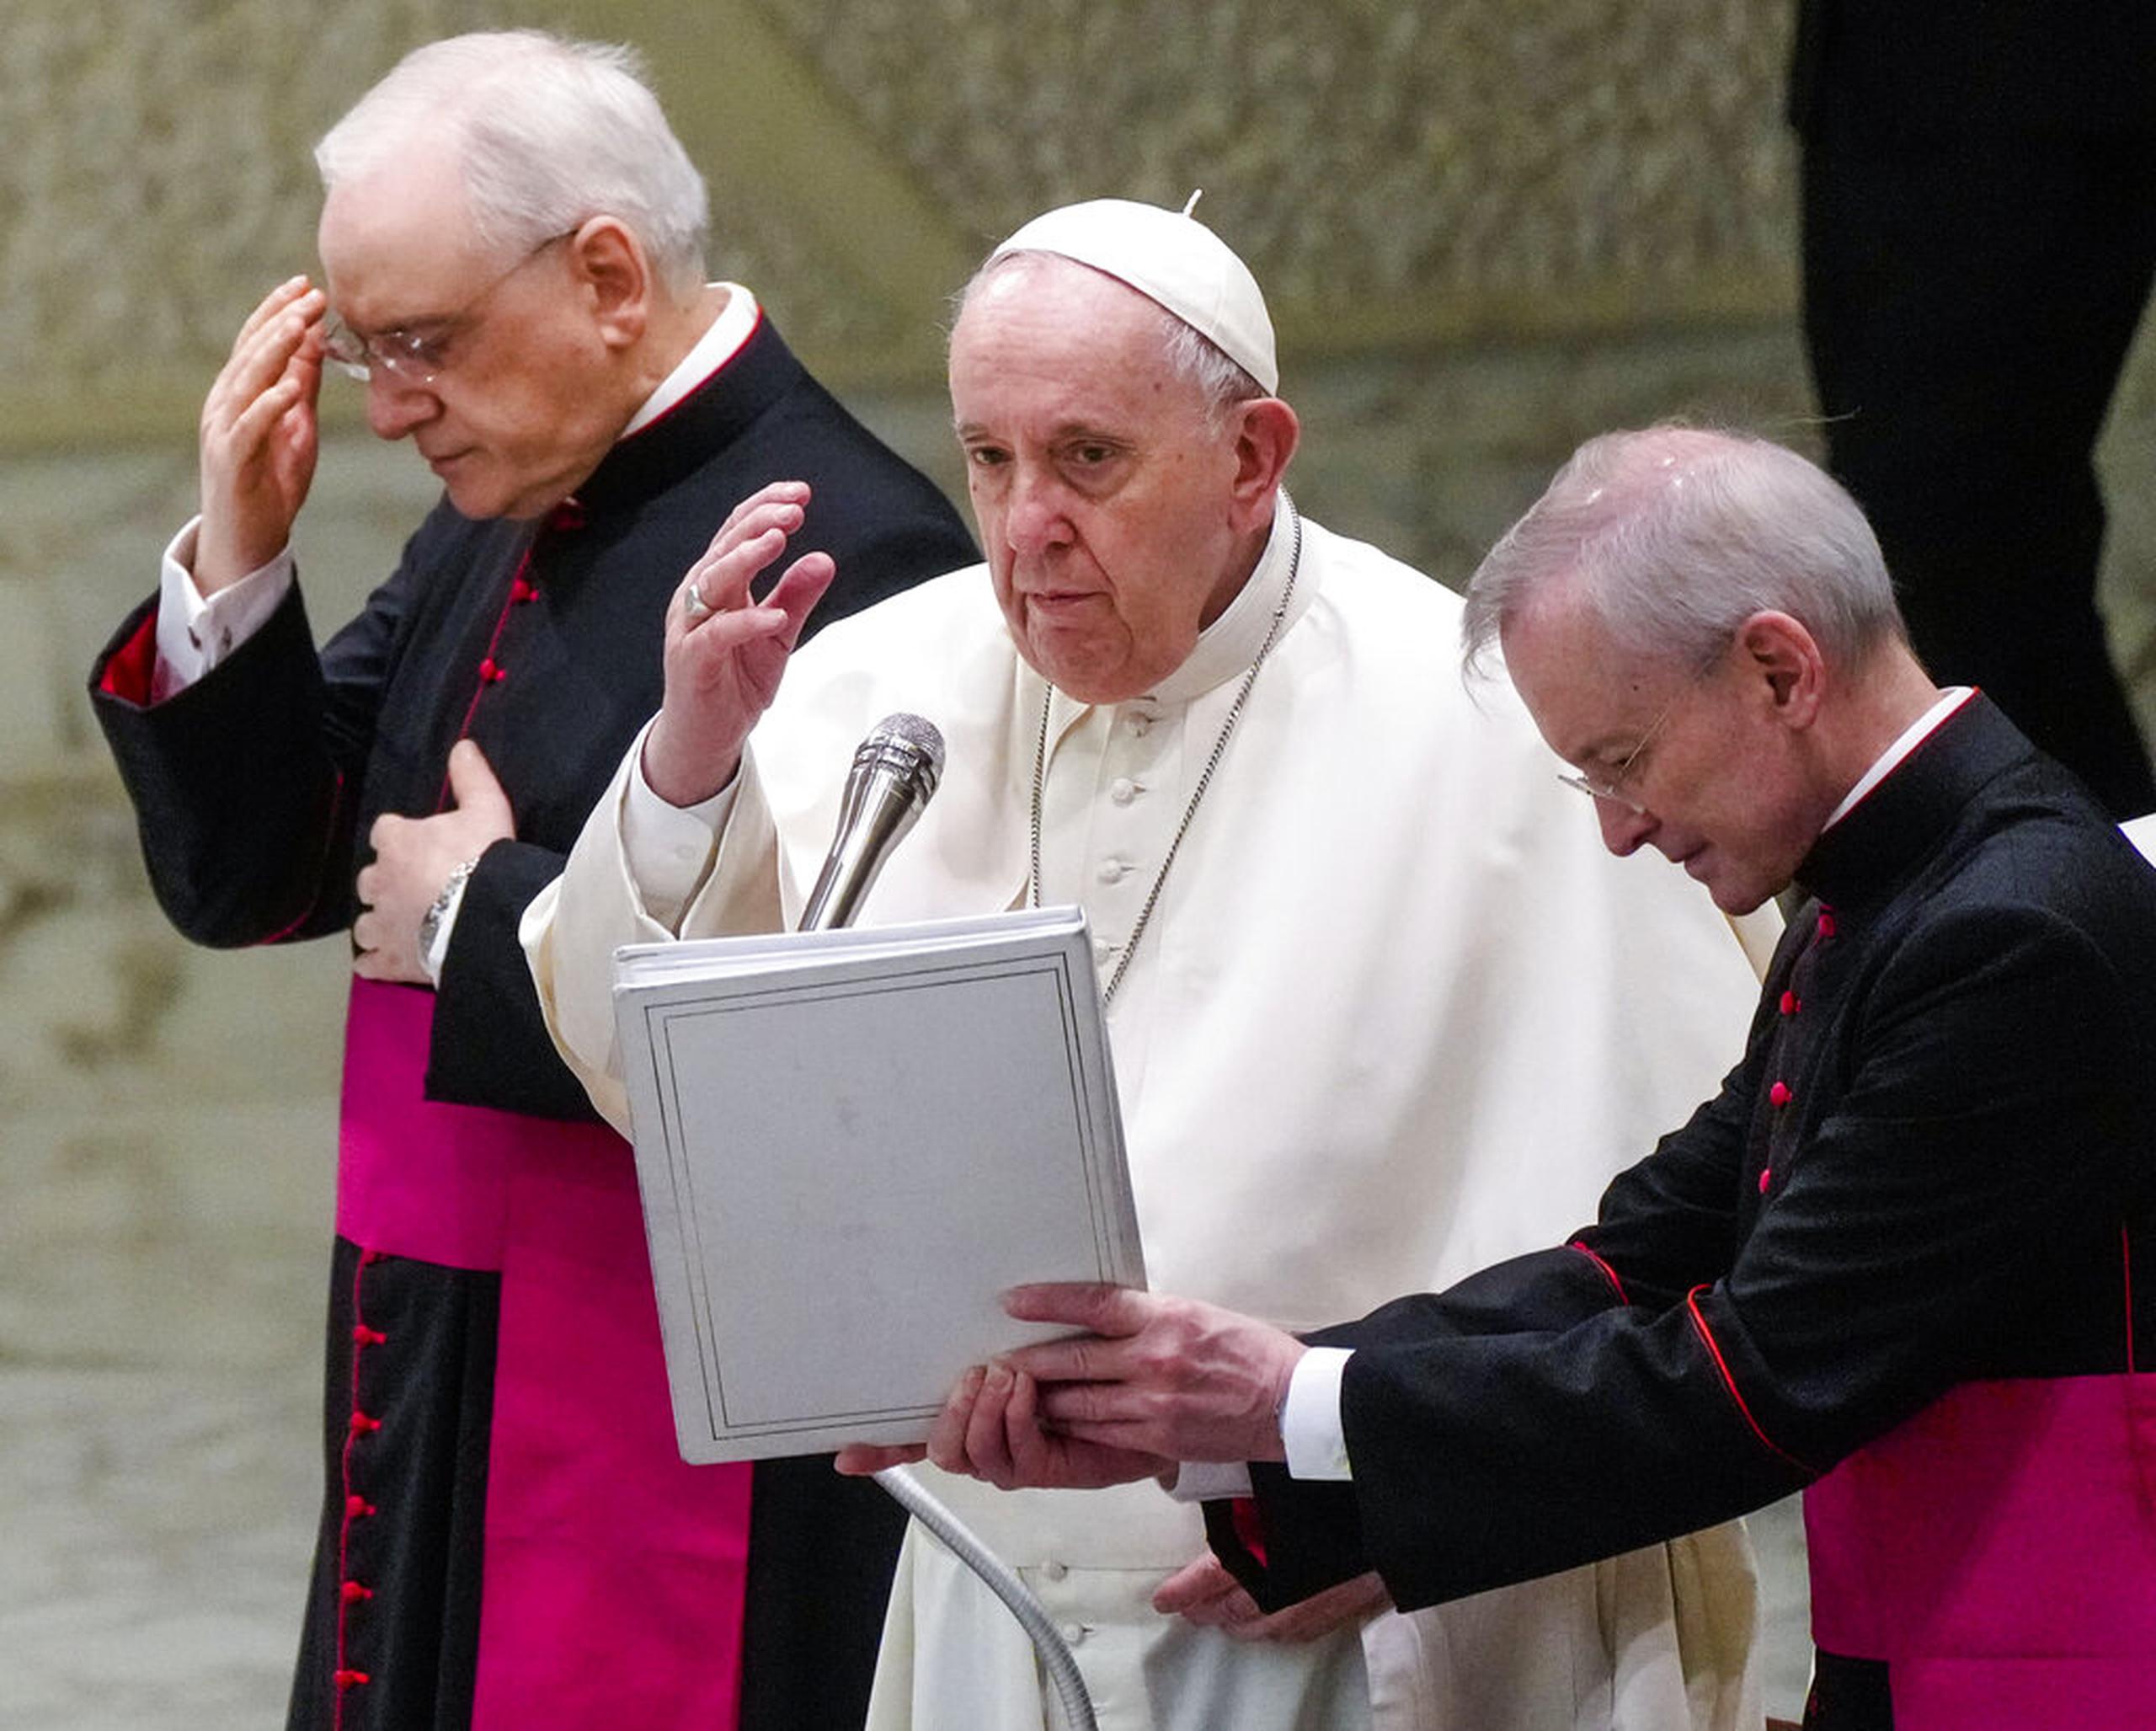 El papa Francisco, el monseñor Leonardo Sapienza y el monseñor Guido Marini durante la bendición en la audiencia general.